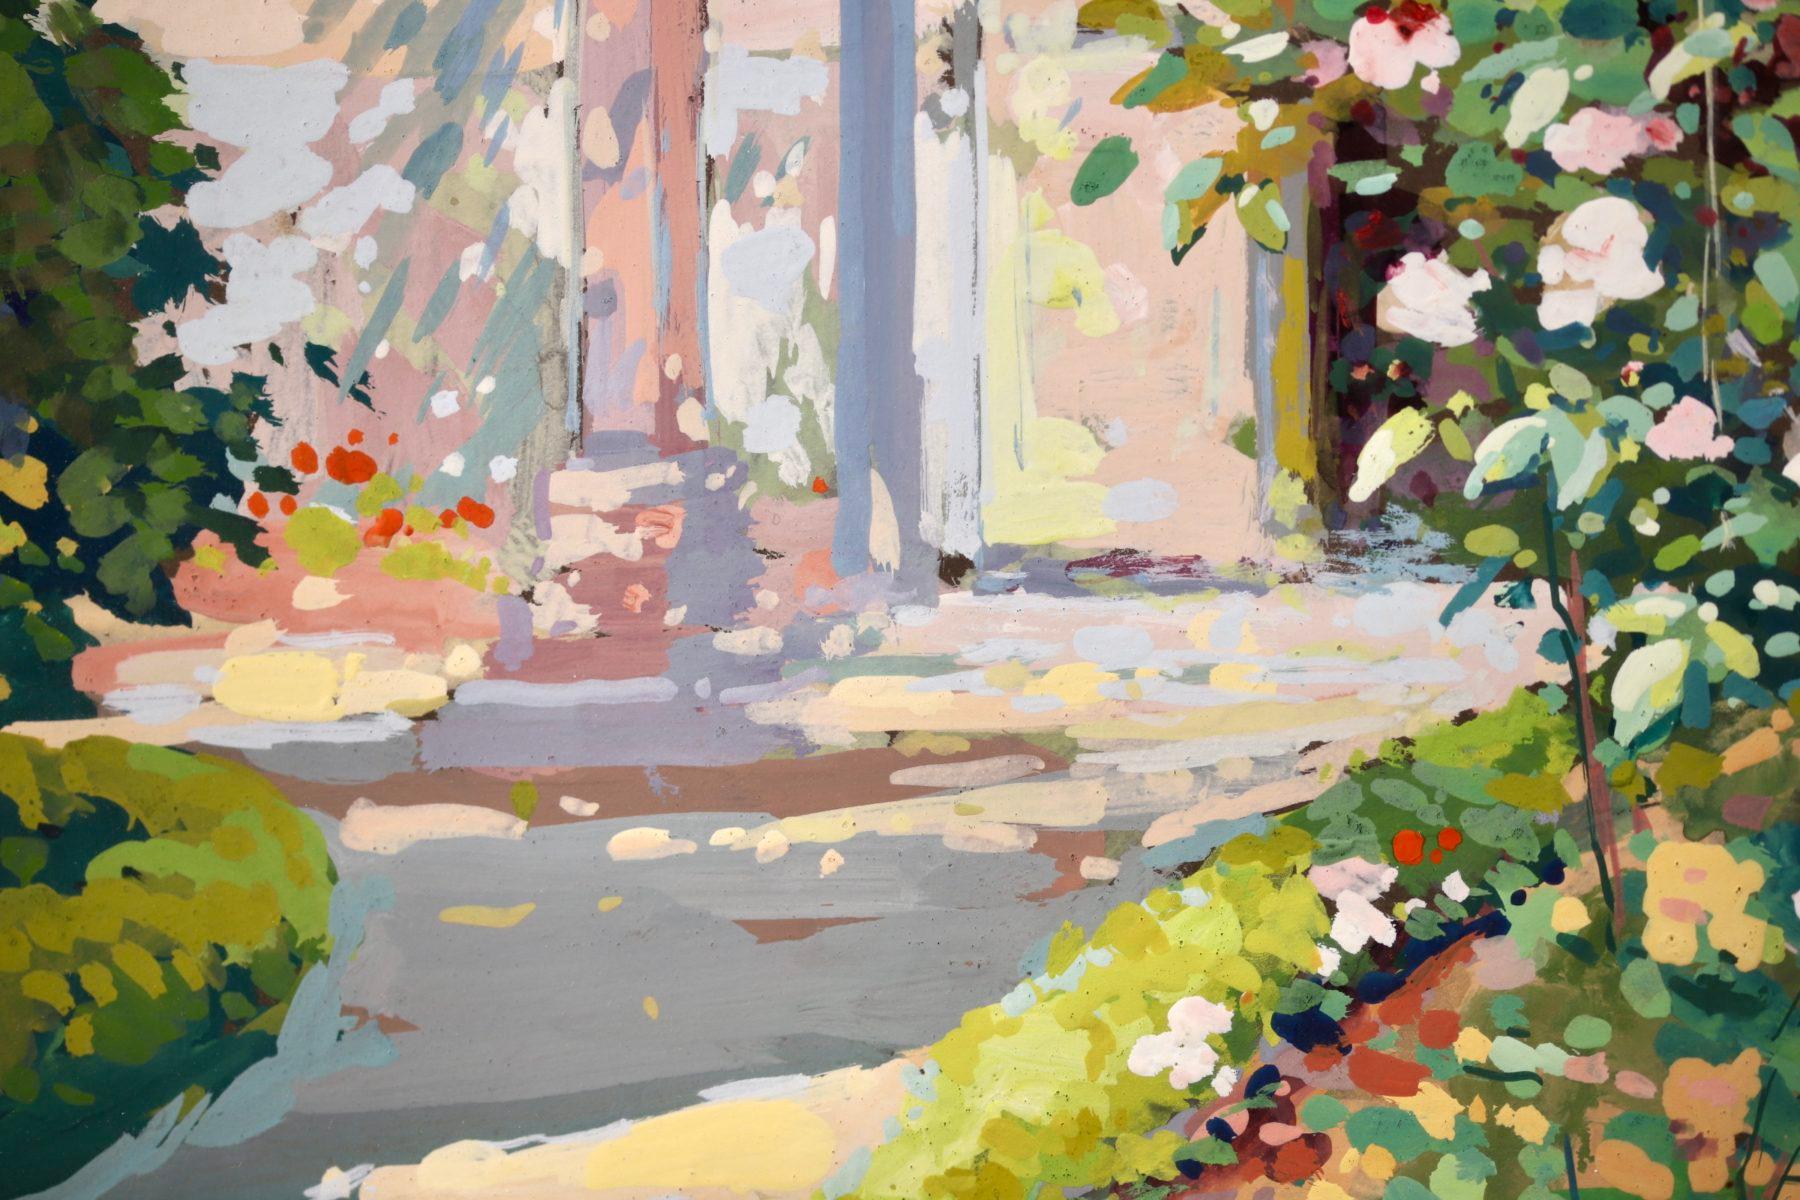 Eine atemberaubende Gouache auf Karton Landschaft circa 1940 von gesuchten Französisch Impressionist Maler Edouard Leon Cortes. Das Werk ist eine wunderbare Darstellung des Gartens des Künstlers in Lagny an einem warmen und sonnigen Sommertag. Die